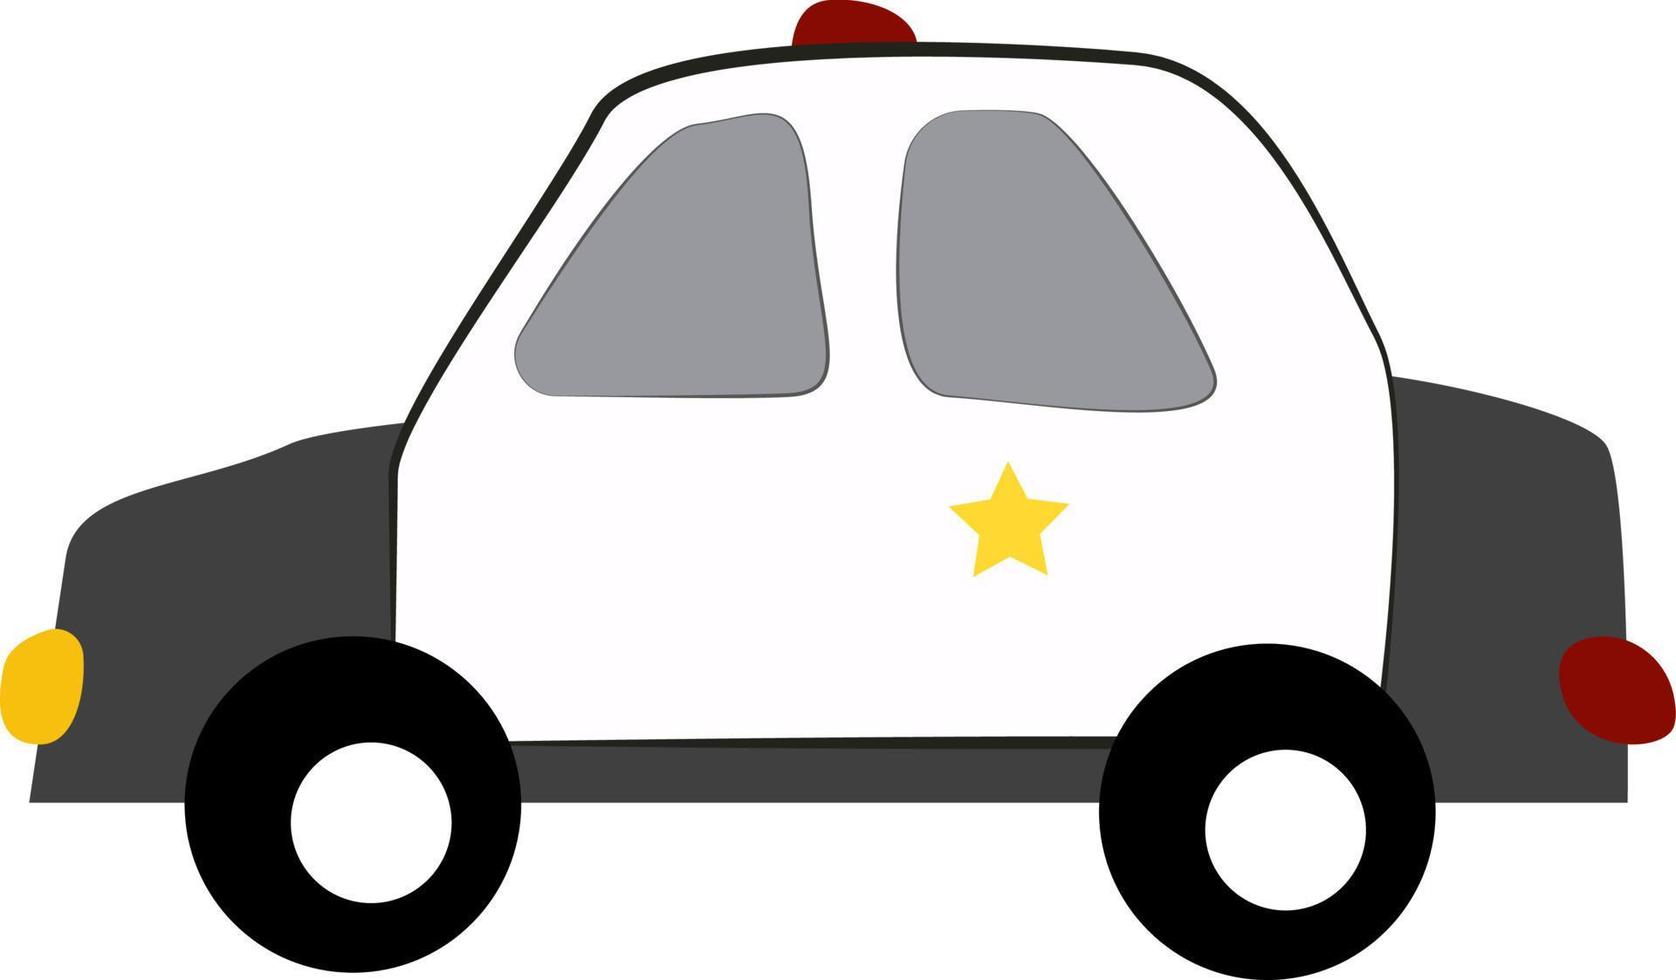 coche de policía, ilustración, vector sobre fondo blanco.